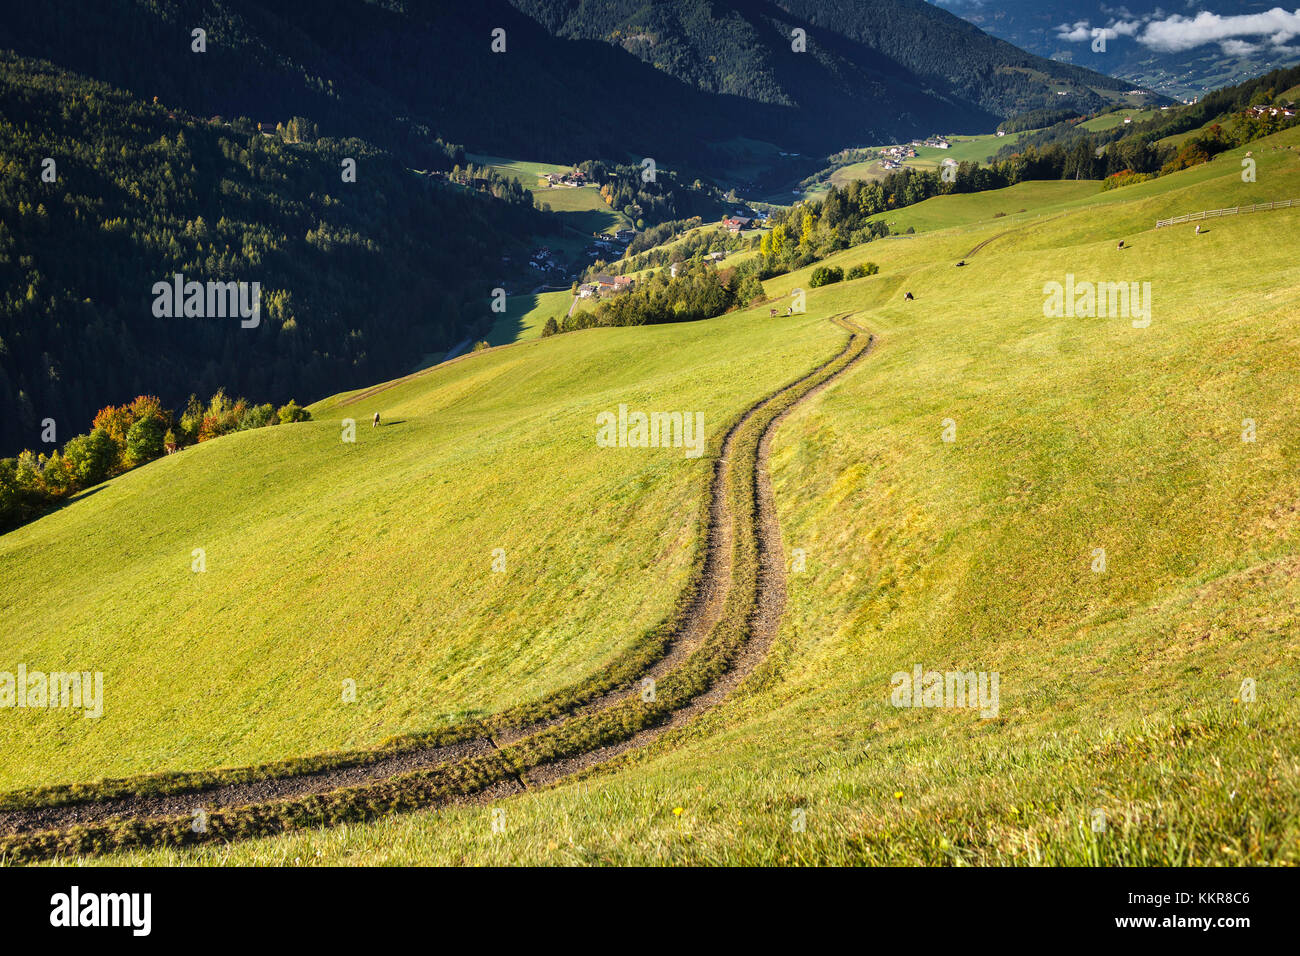 Farmer's track, Coll, Santa Magdalena, Funes valley, South Tyrol region, Trentino Alto Adige, Bolzano province, Italy, Europe Stock Photo